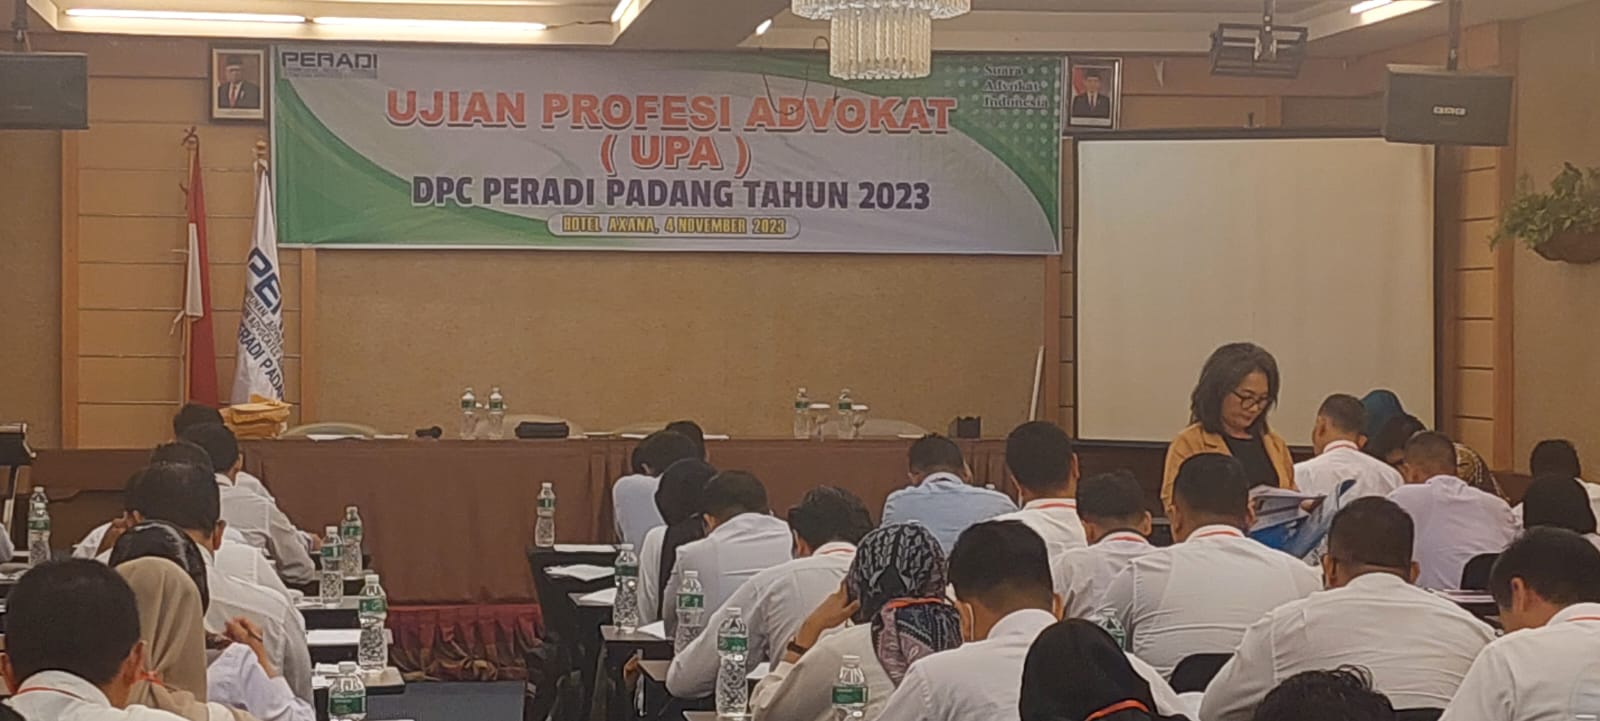 Sabtu, 04 November 2023. DPC PERADI SAI Padang mengadakan Ujian Profesi Advokat (UPA) yang Pelaksanaannya berlokasi di The Axana Hotel, dengan jumlah Peserta yang hadir 71 orang.